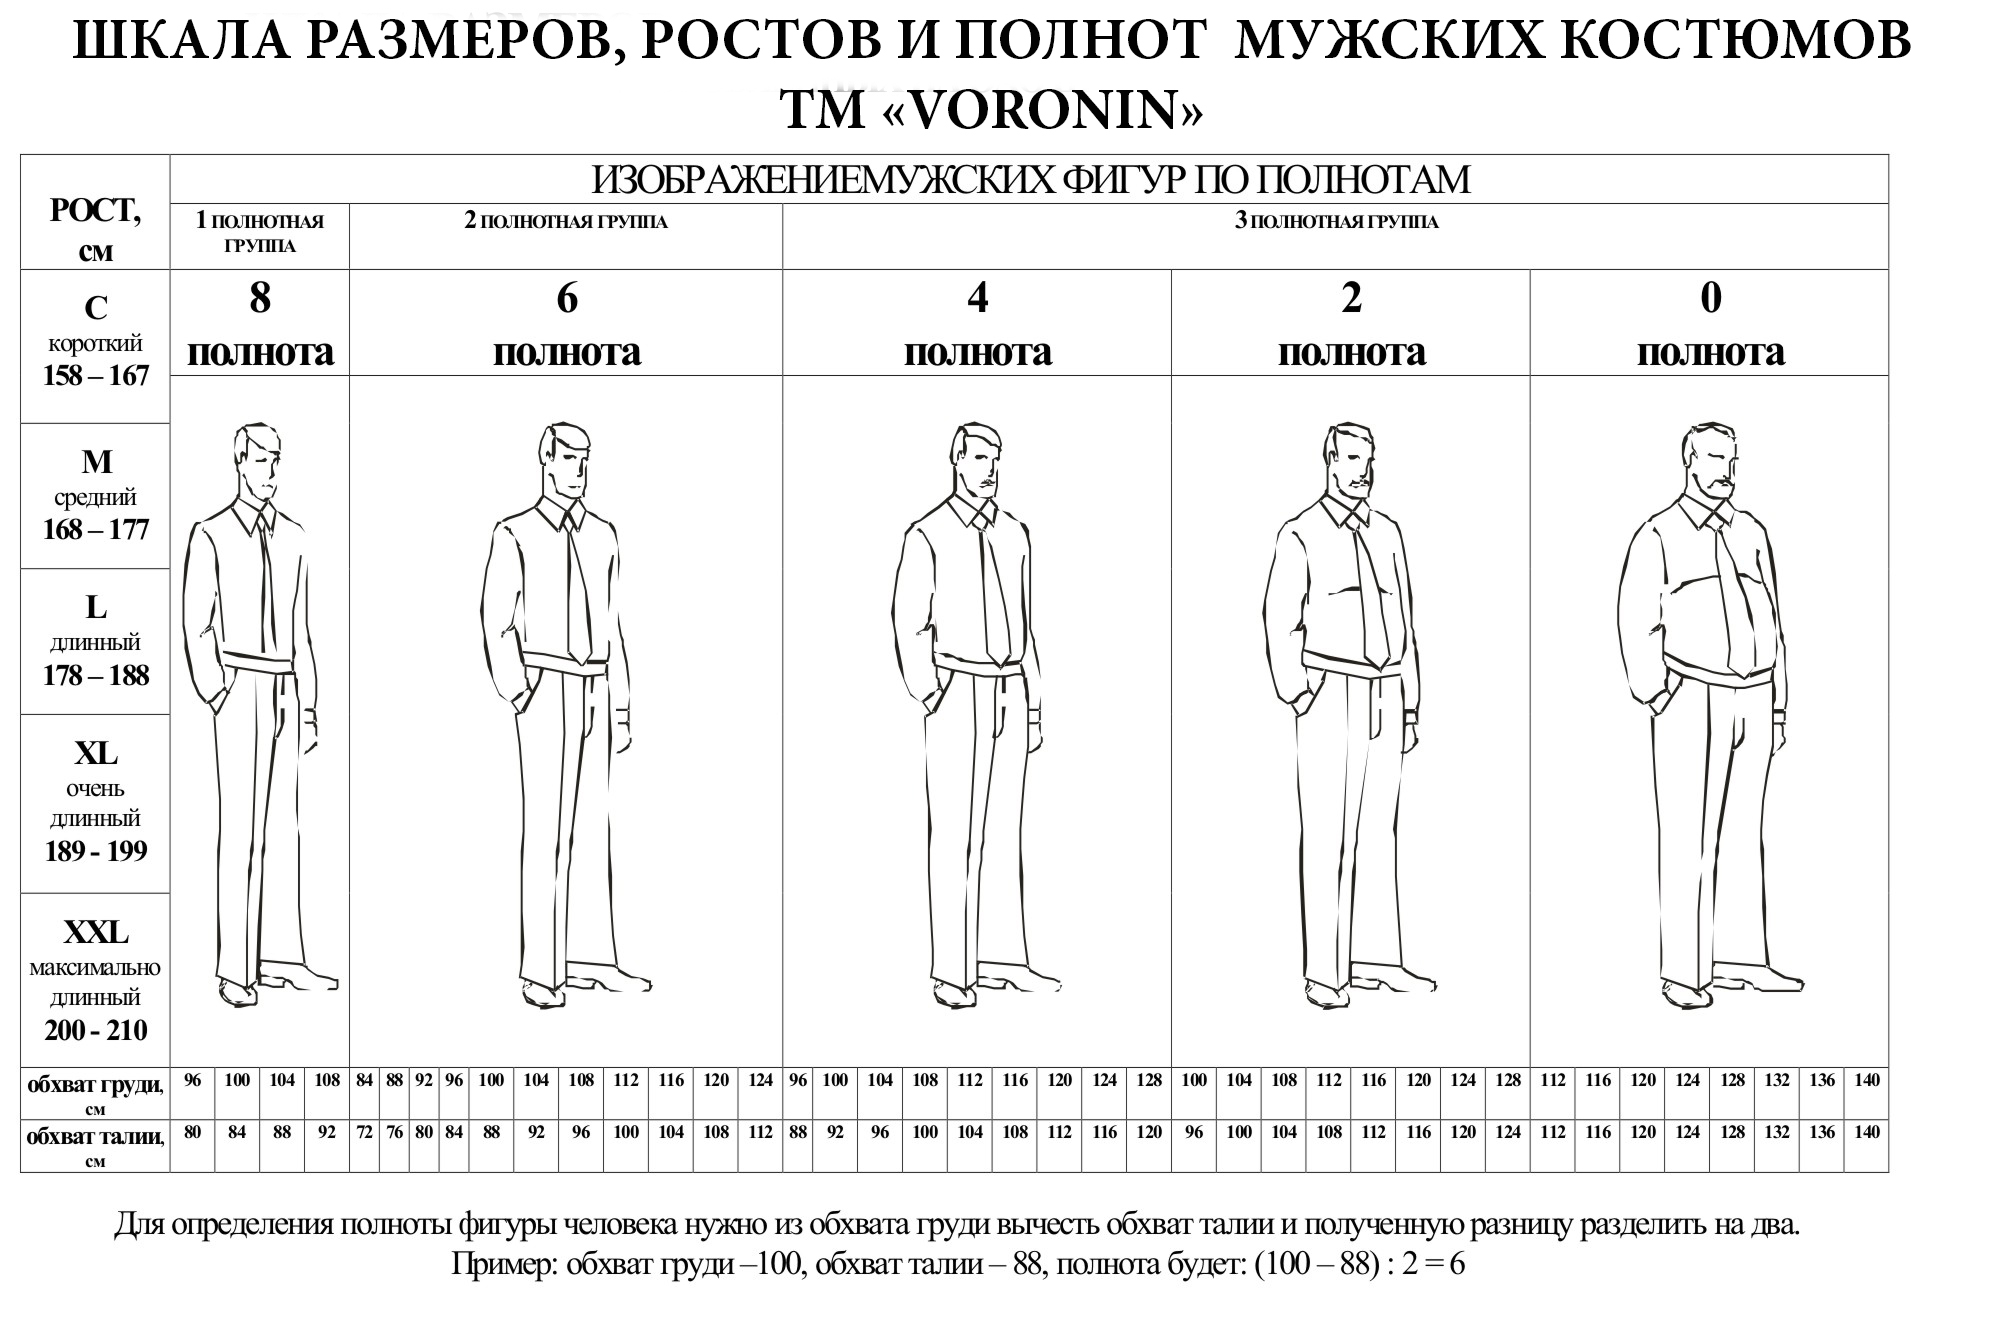 Рост 6 мужчина. Полнотные группы мужчин. Таблица костюмов мужских. Размеры мужских костюмов. Размер и полнота мужской одежды.